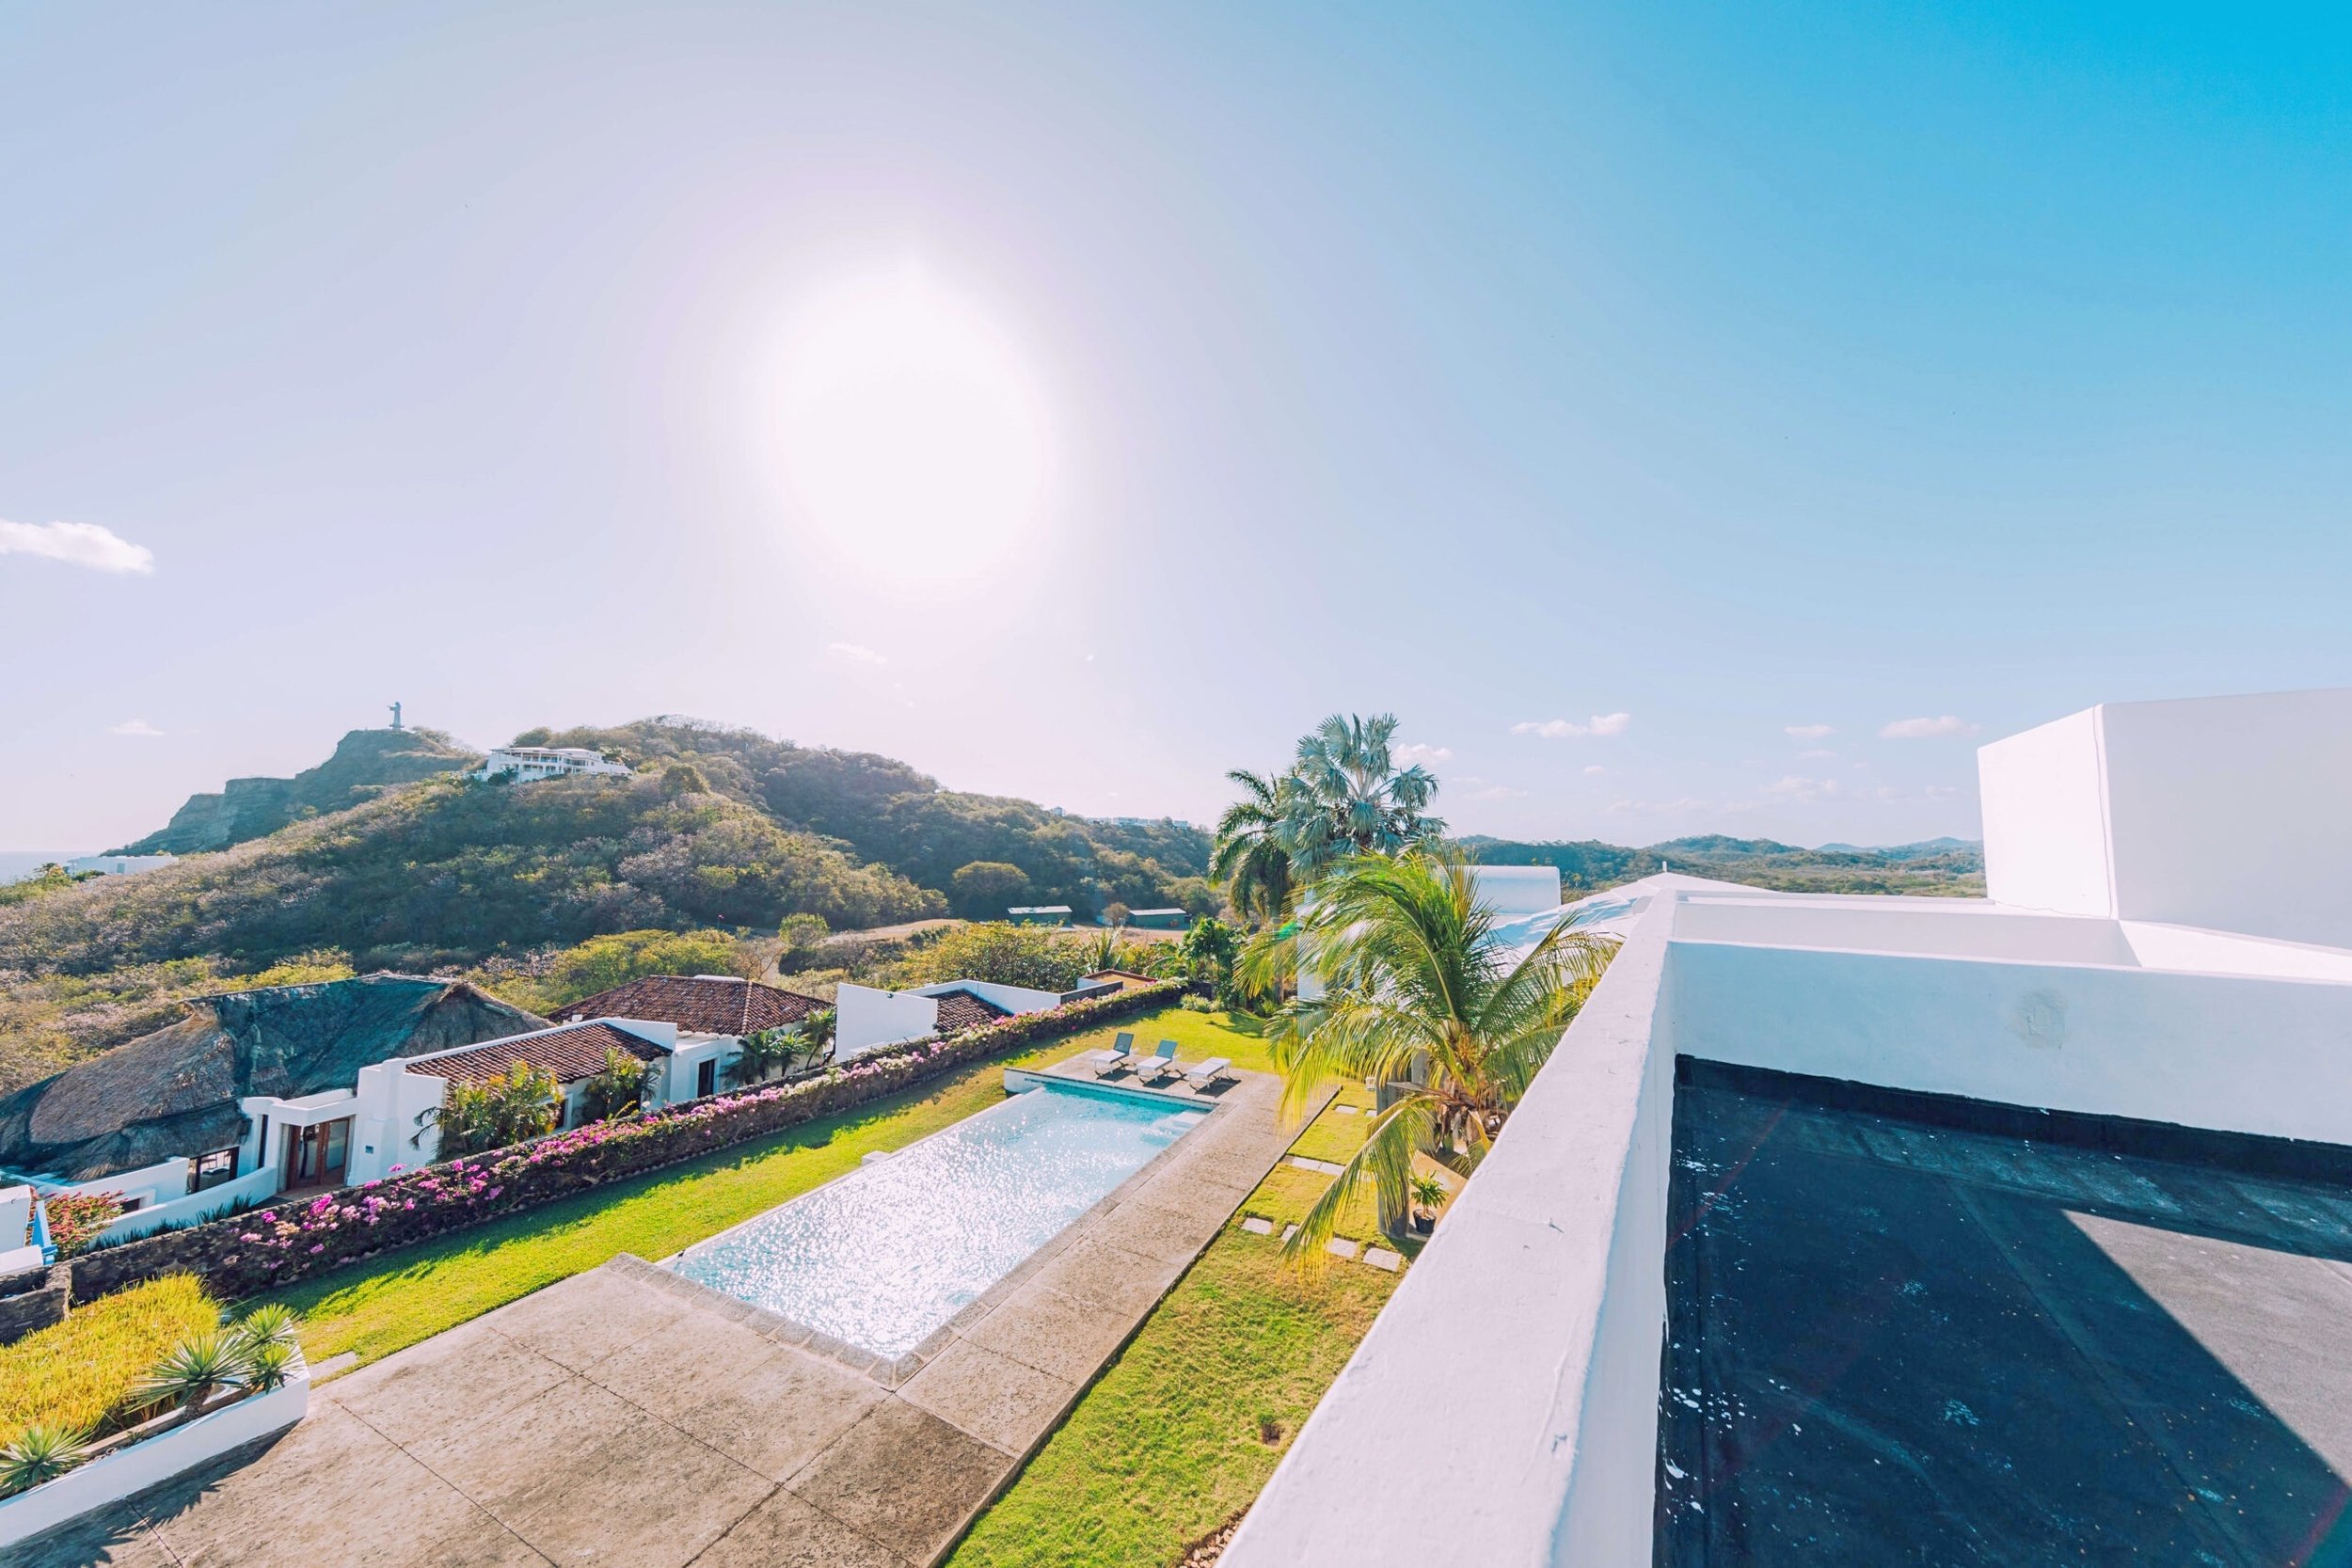 Luxury Home For Sale San Juan Del Sur Nicaragua Real Estate Property 5.jpg